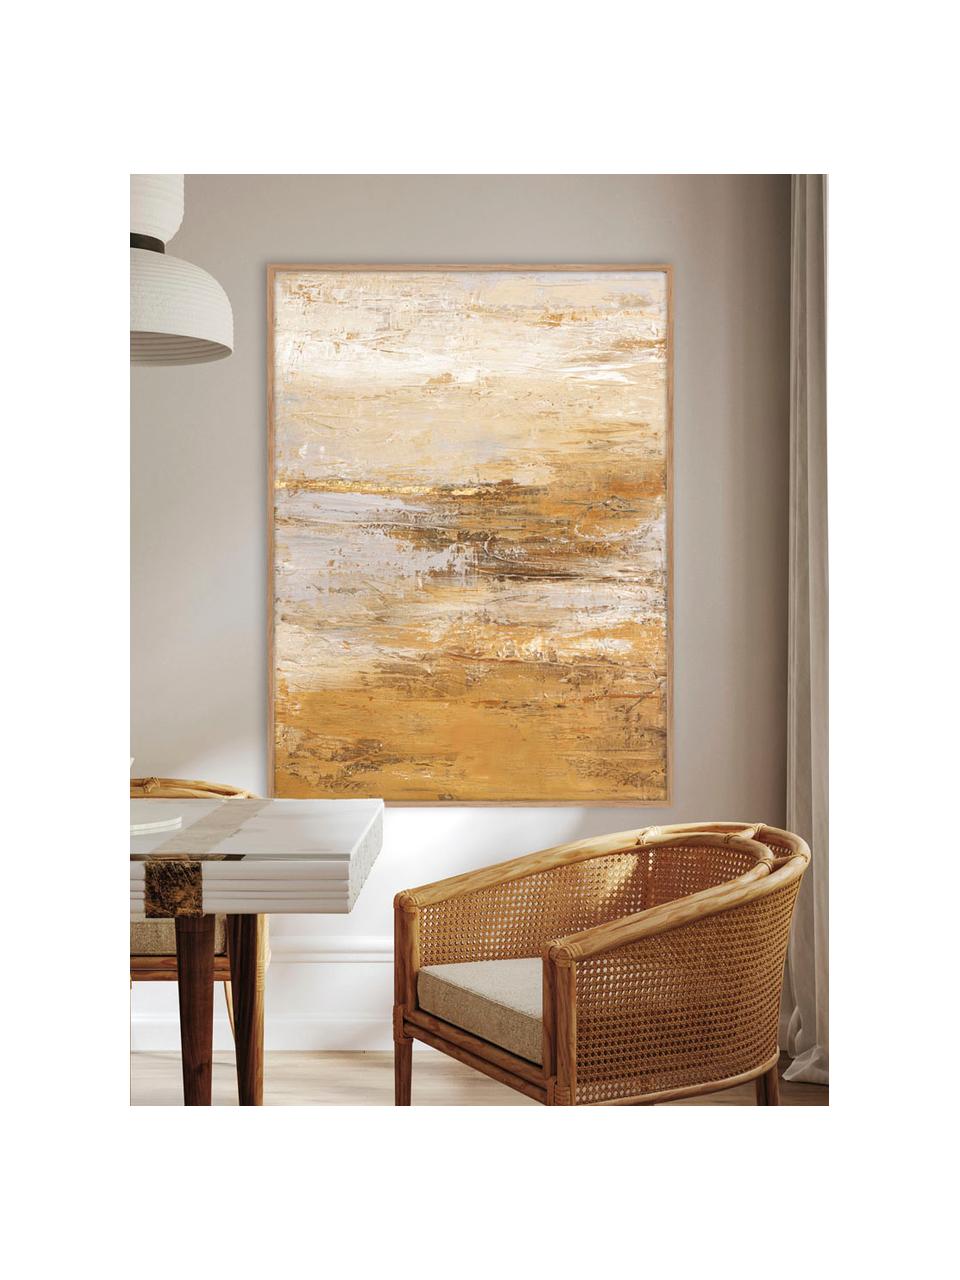 Ručně malovaný obrázek na plátně s dřevěným rámem Hydrate, Odstíny žluté, Š 92 cm, V 120 cm